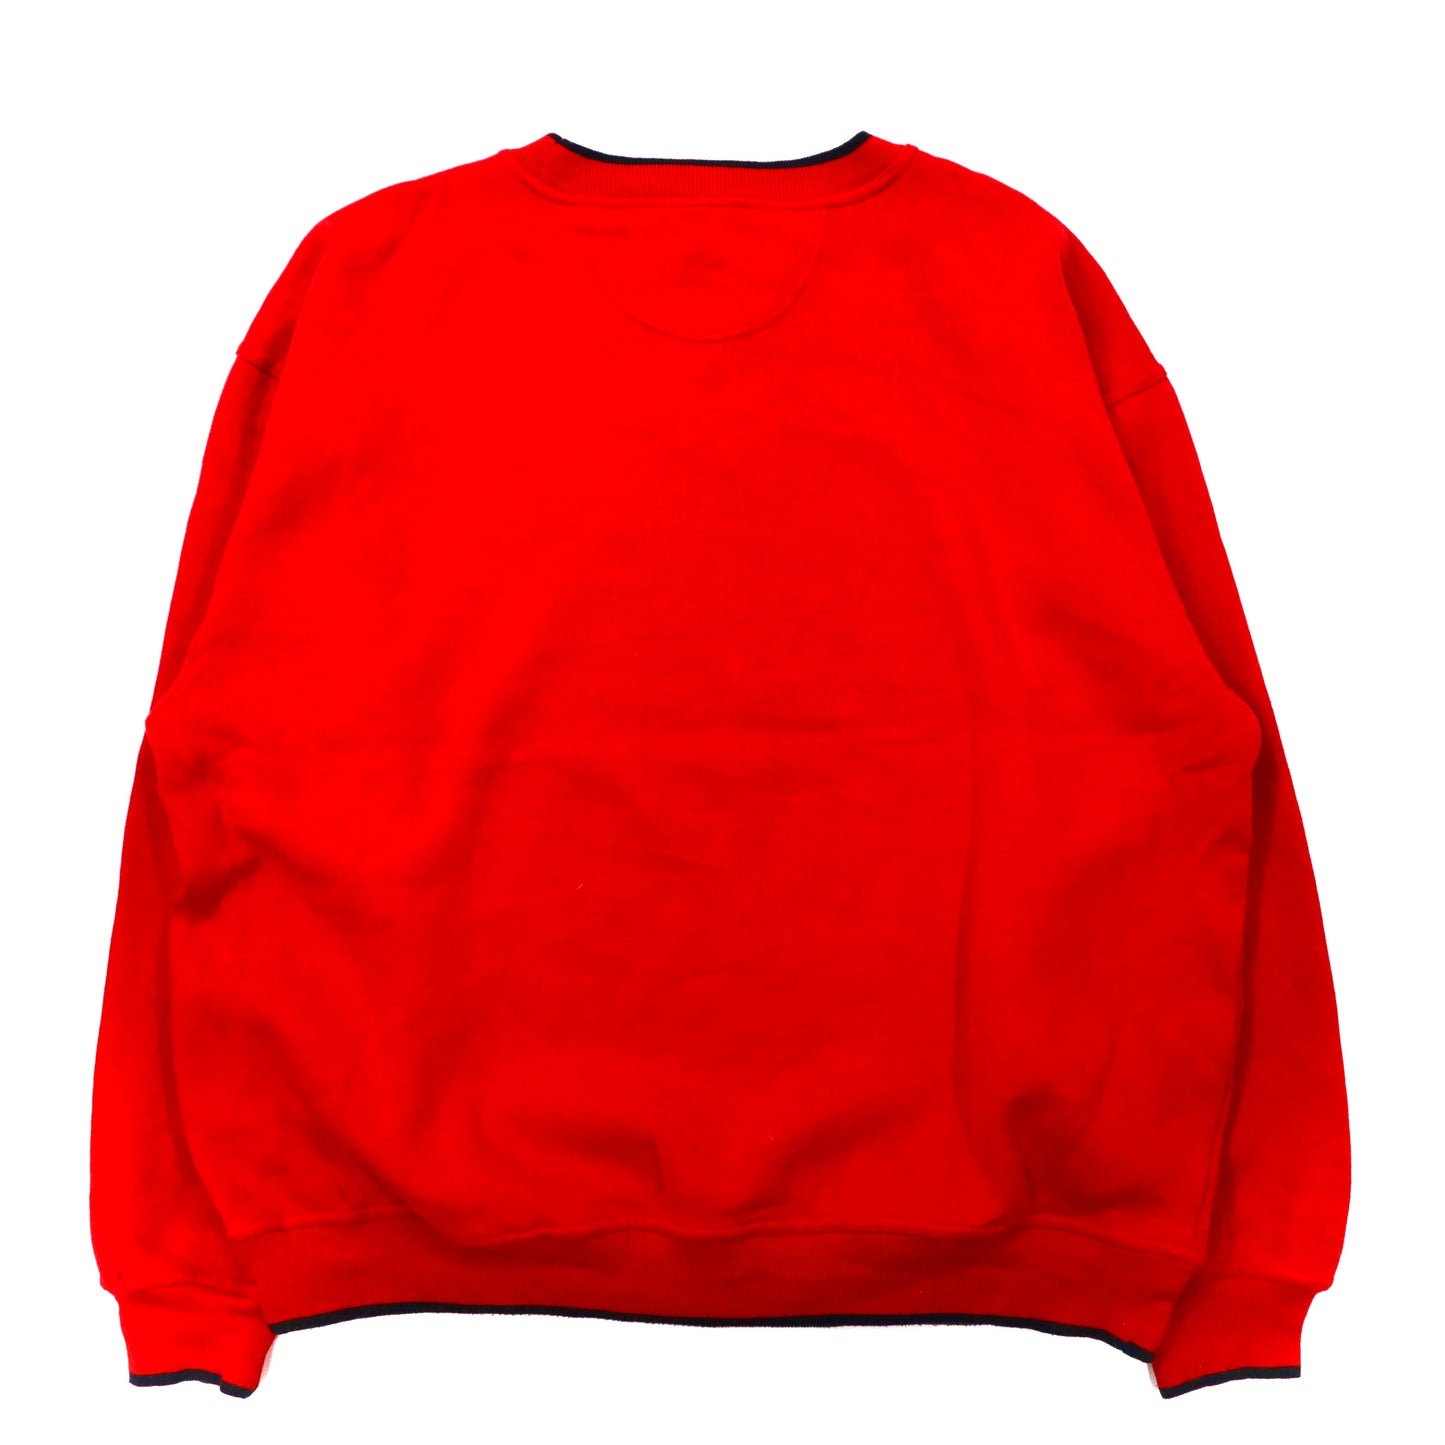 RED OAK ビッグサイズ スウェット XL レッド コットン 裏起毛 カレッジ フットボール NC STATE Wolfpack 90年代 モンゴル製